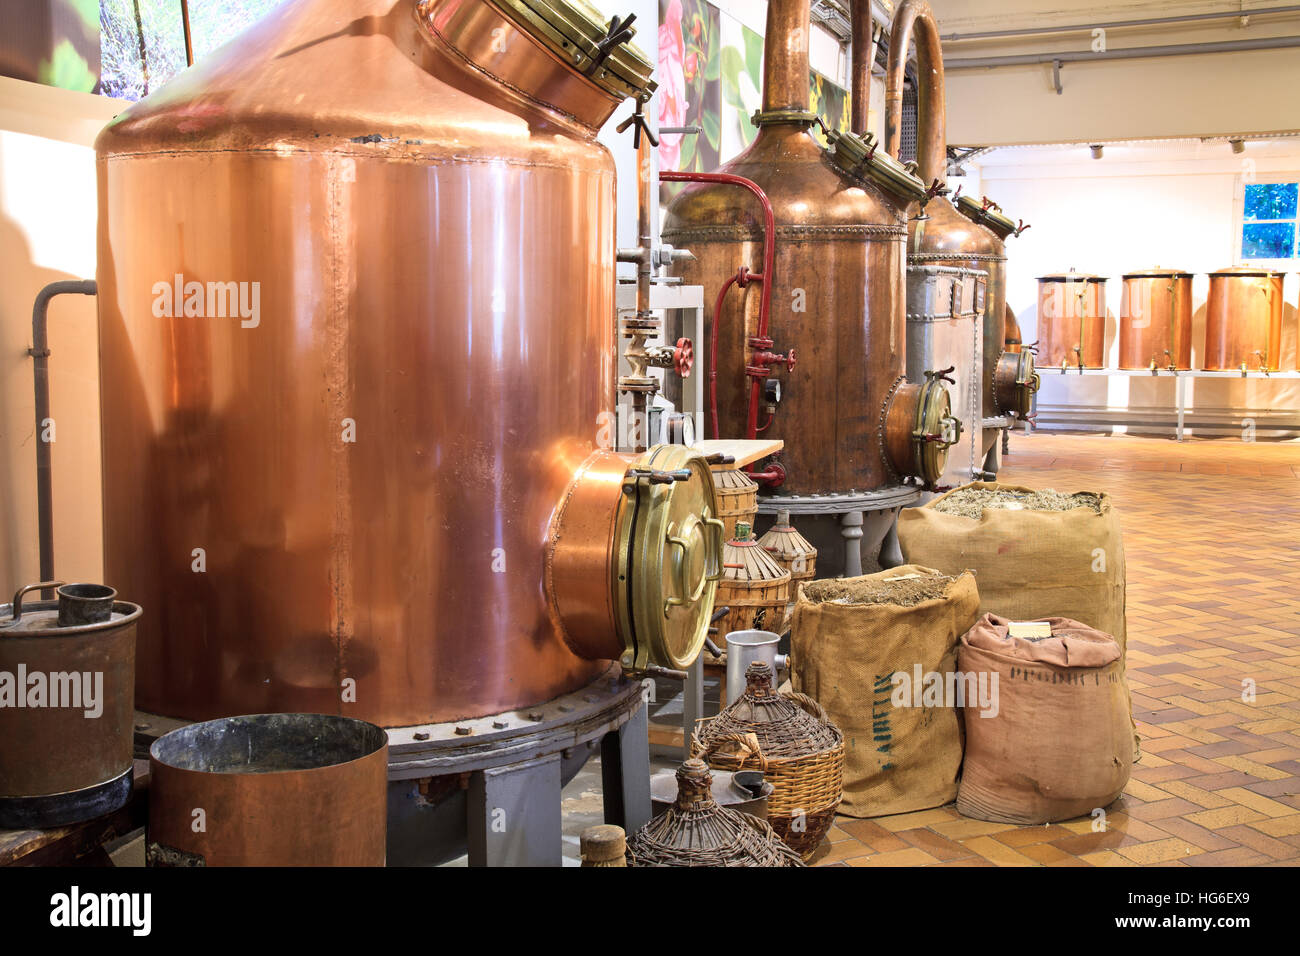 Profumeria Fragonard nella storica fabbrica, gli alambicchi (Grasse, Alpes-Maritimes, Francia) Foto Stock